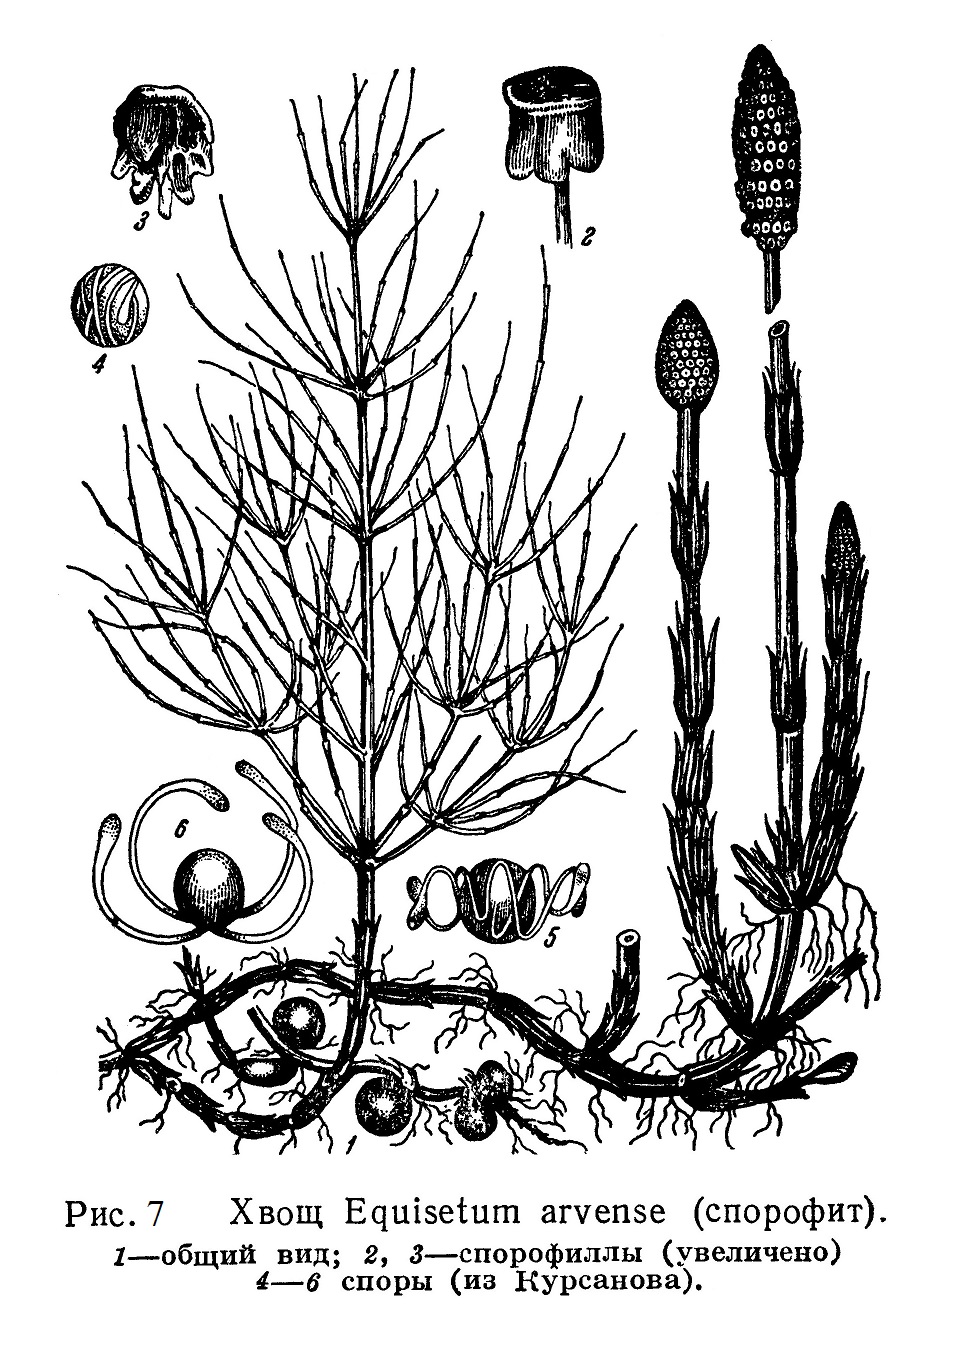 Хвощ Equisetum arvense (спорофит)